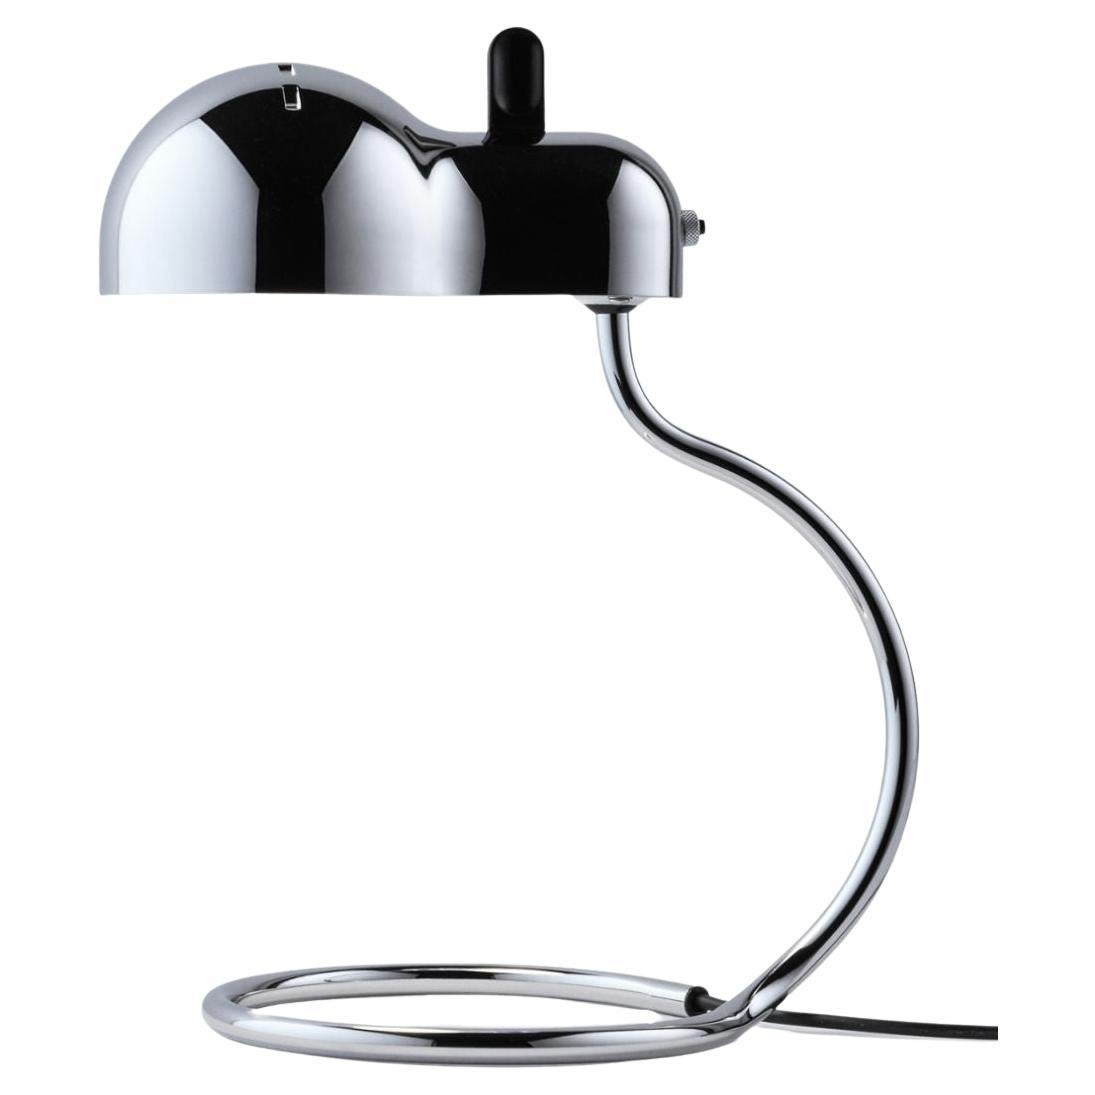 Joe Colombo 'Minitopo' Table Lamp in Chrome for Stilnovo For Sale